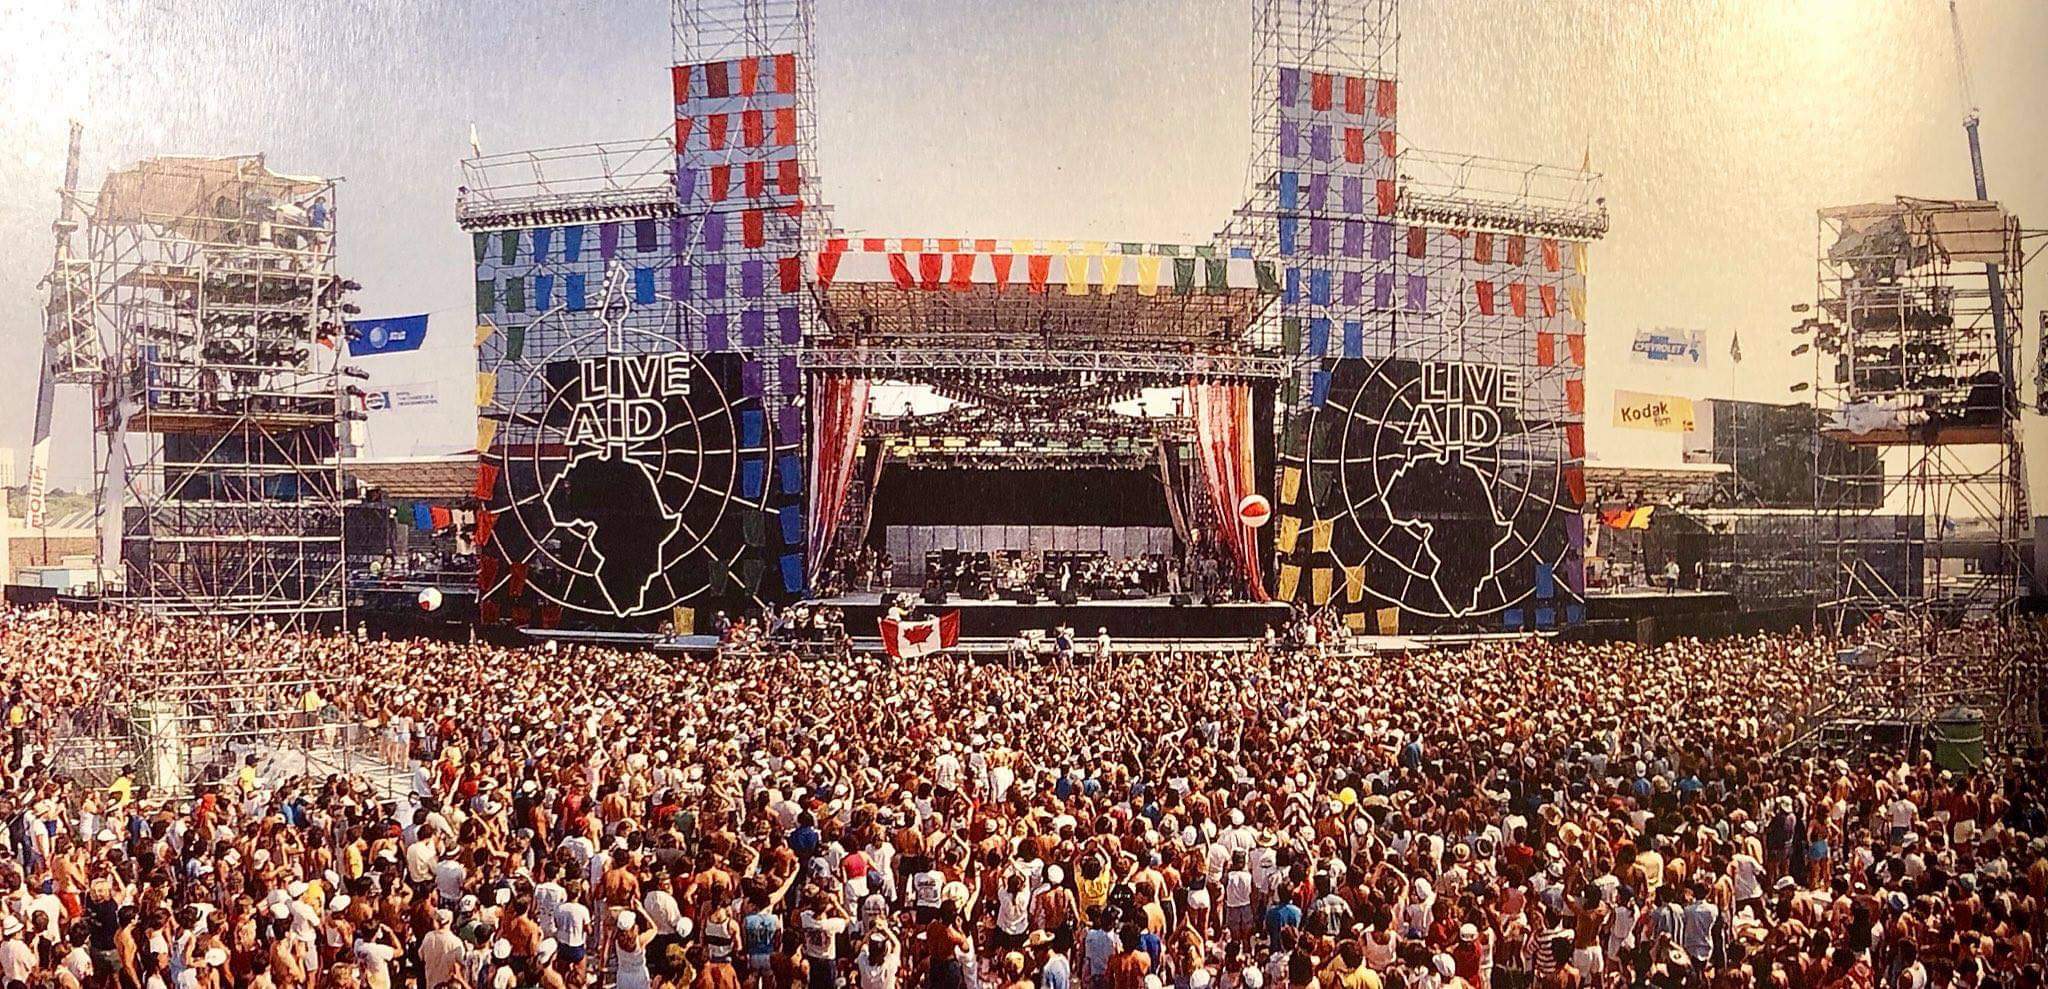 Концерт квин на стадионе. Концерт Live Aid 1985 Queen. Live Aid стадион Уэмбли. Концерт Квин Уэмбли 1985. Концерт в Уэмбли Live Aid.